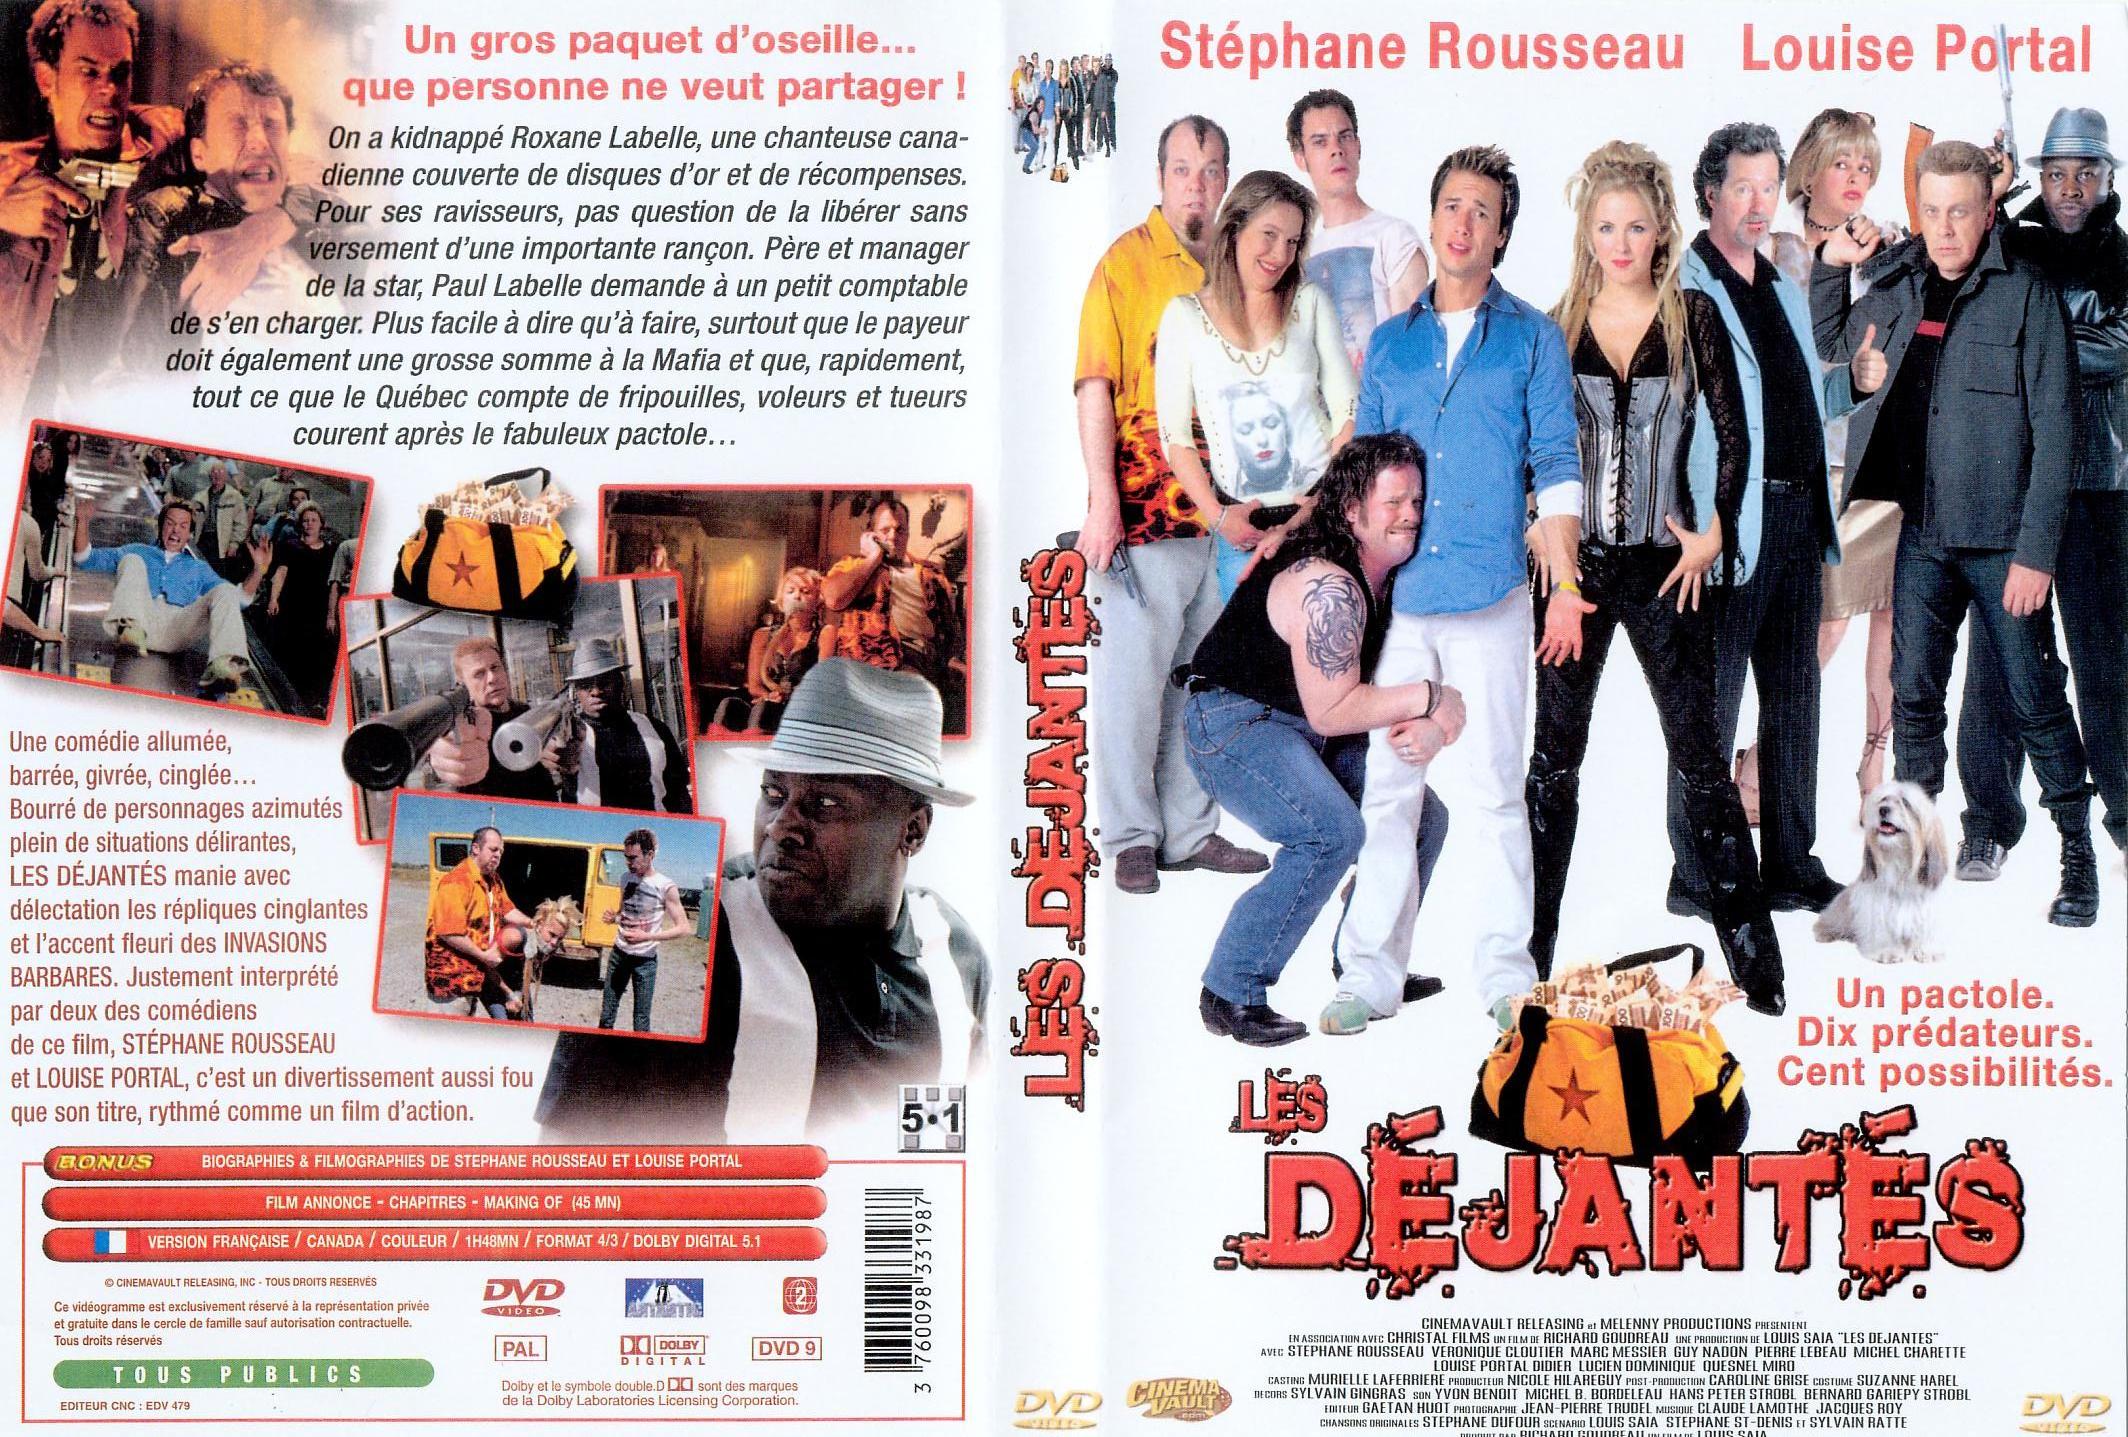 Jaquette DVD Les djants